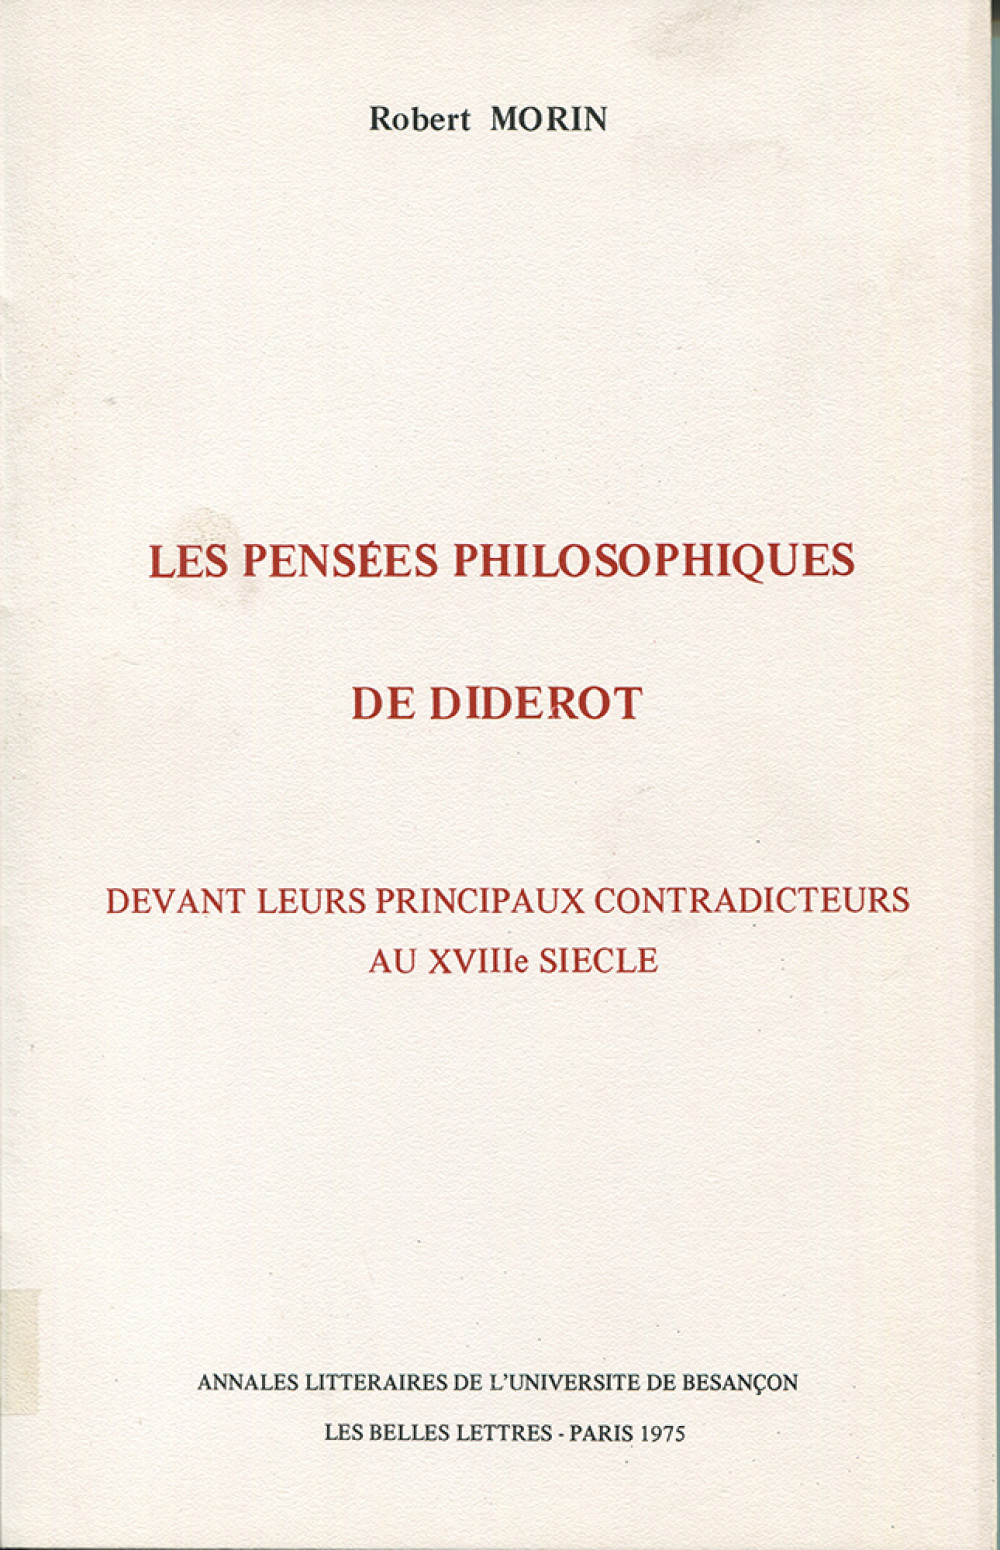 Les pensées philosophiques de Diderot devant leurs principaux contradicteurs